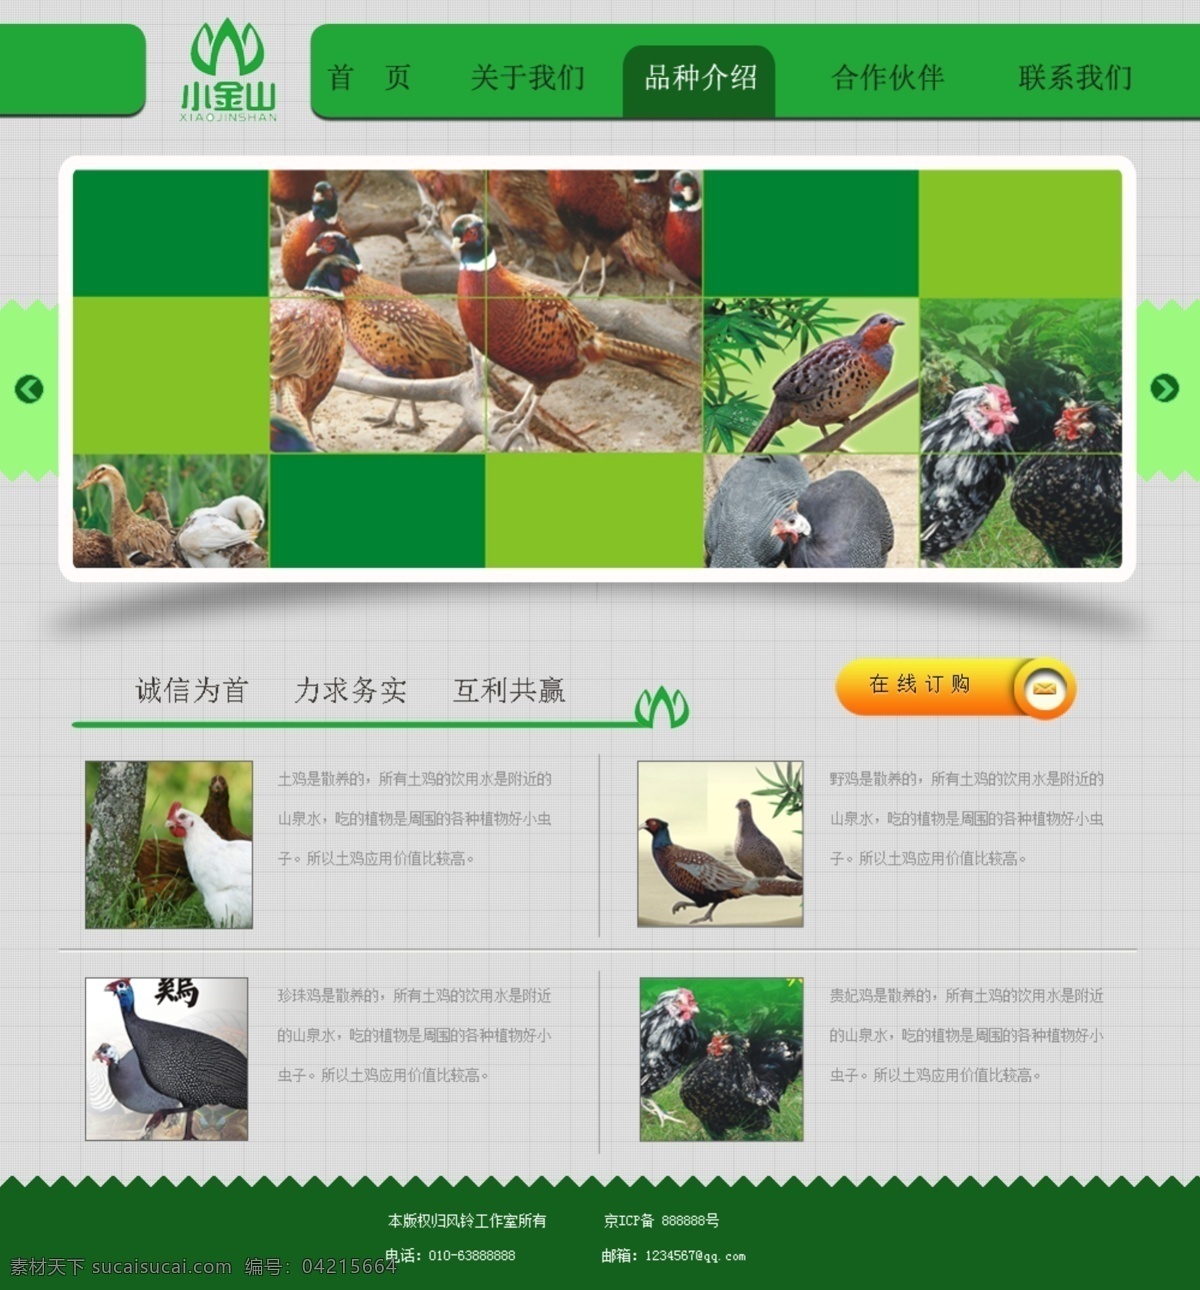 某某 生态 养殖 基地 网页 绿色风格 网页模板 源文件 中文模板 生态养殖 中文网页 精美网页模板 网页素材